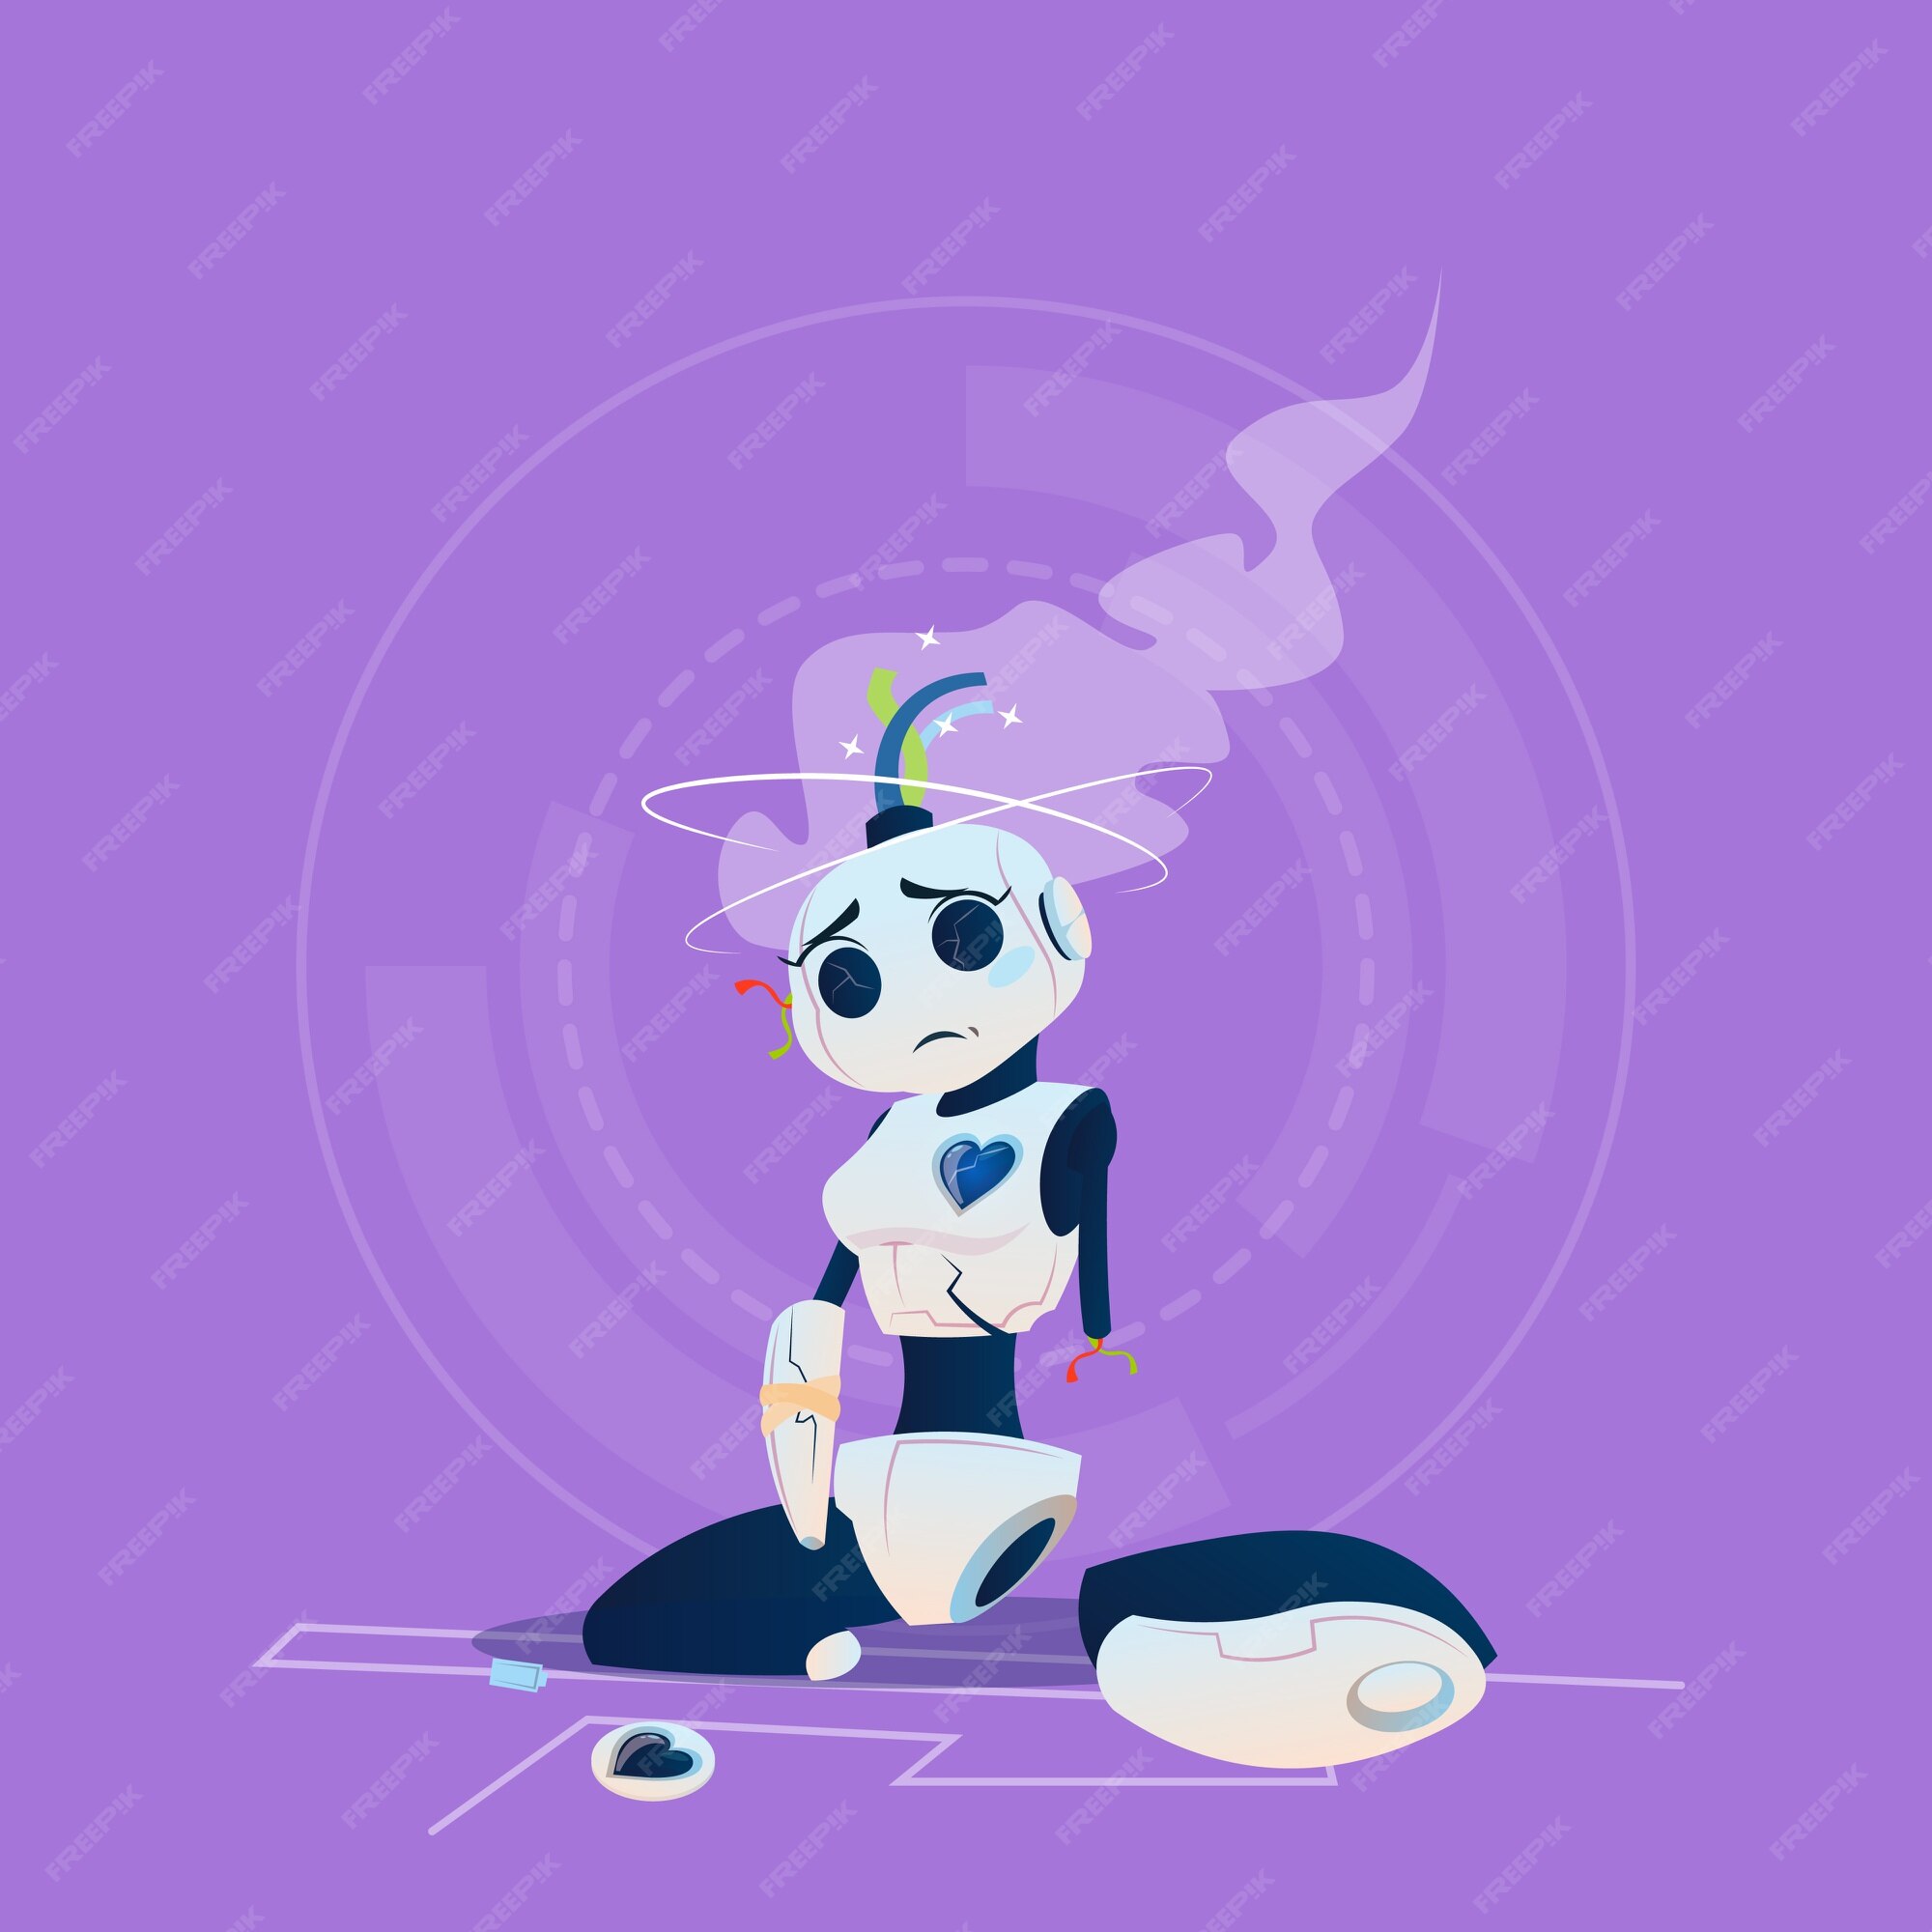 Cute robot Vectors & Illustrations for Free Download | Freepik